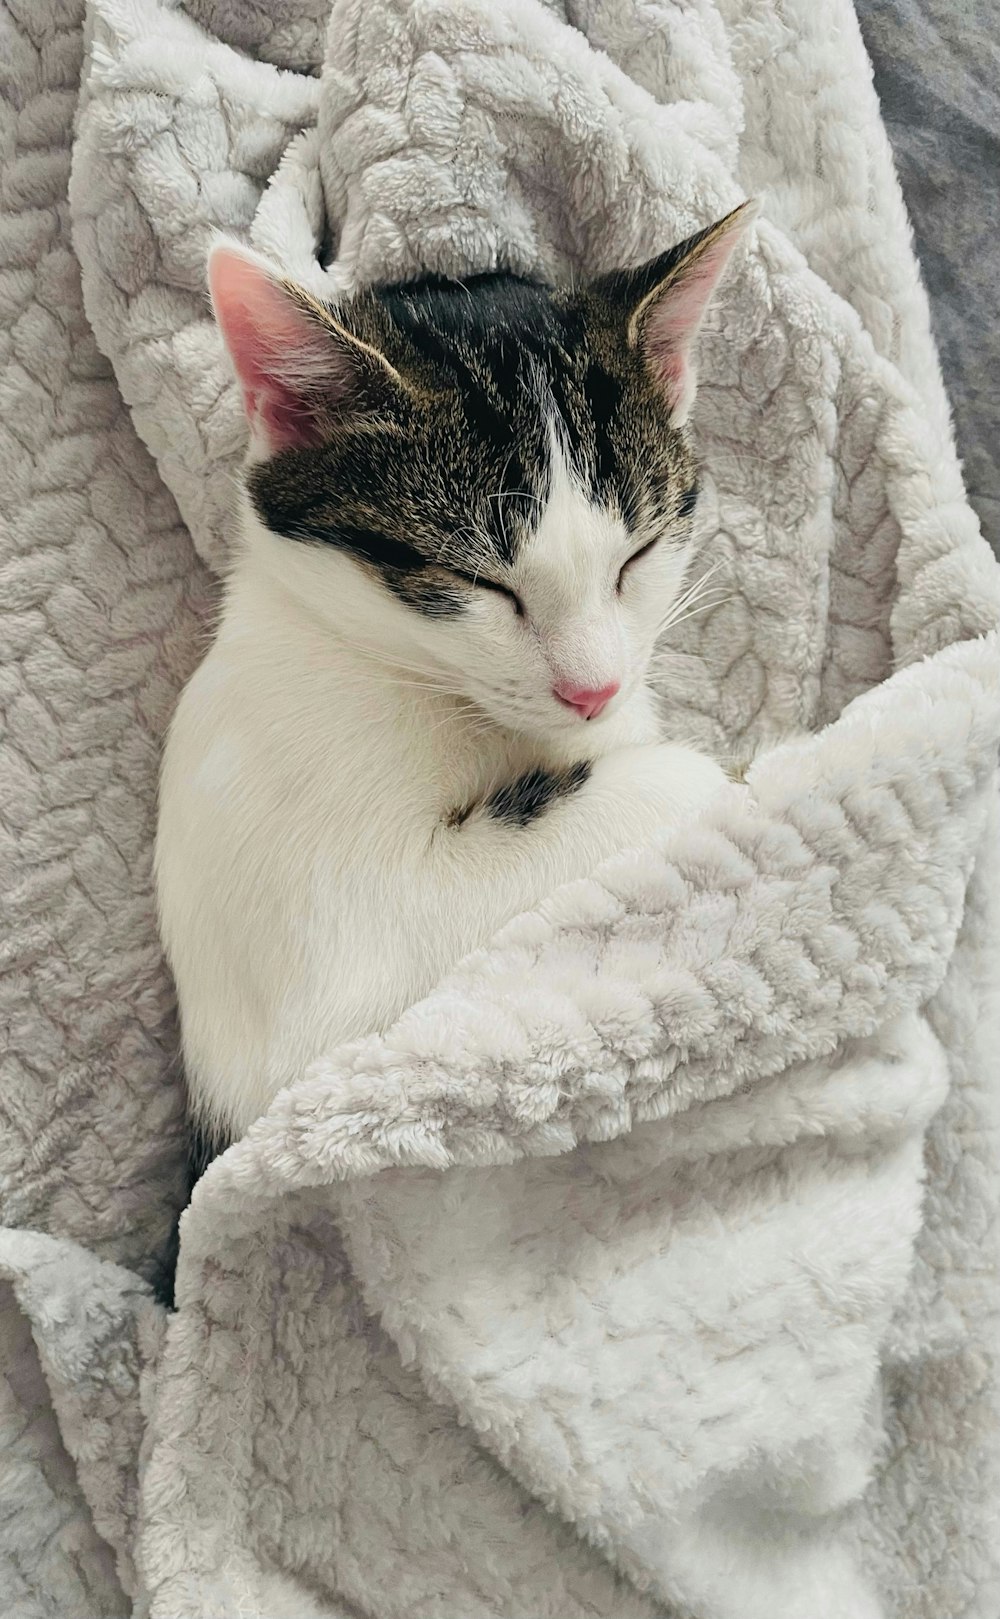 a cat sleeping in a blanket